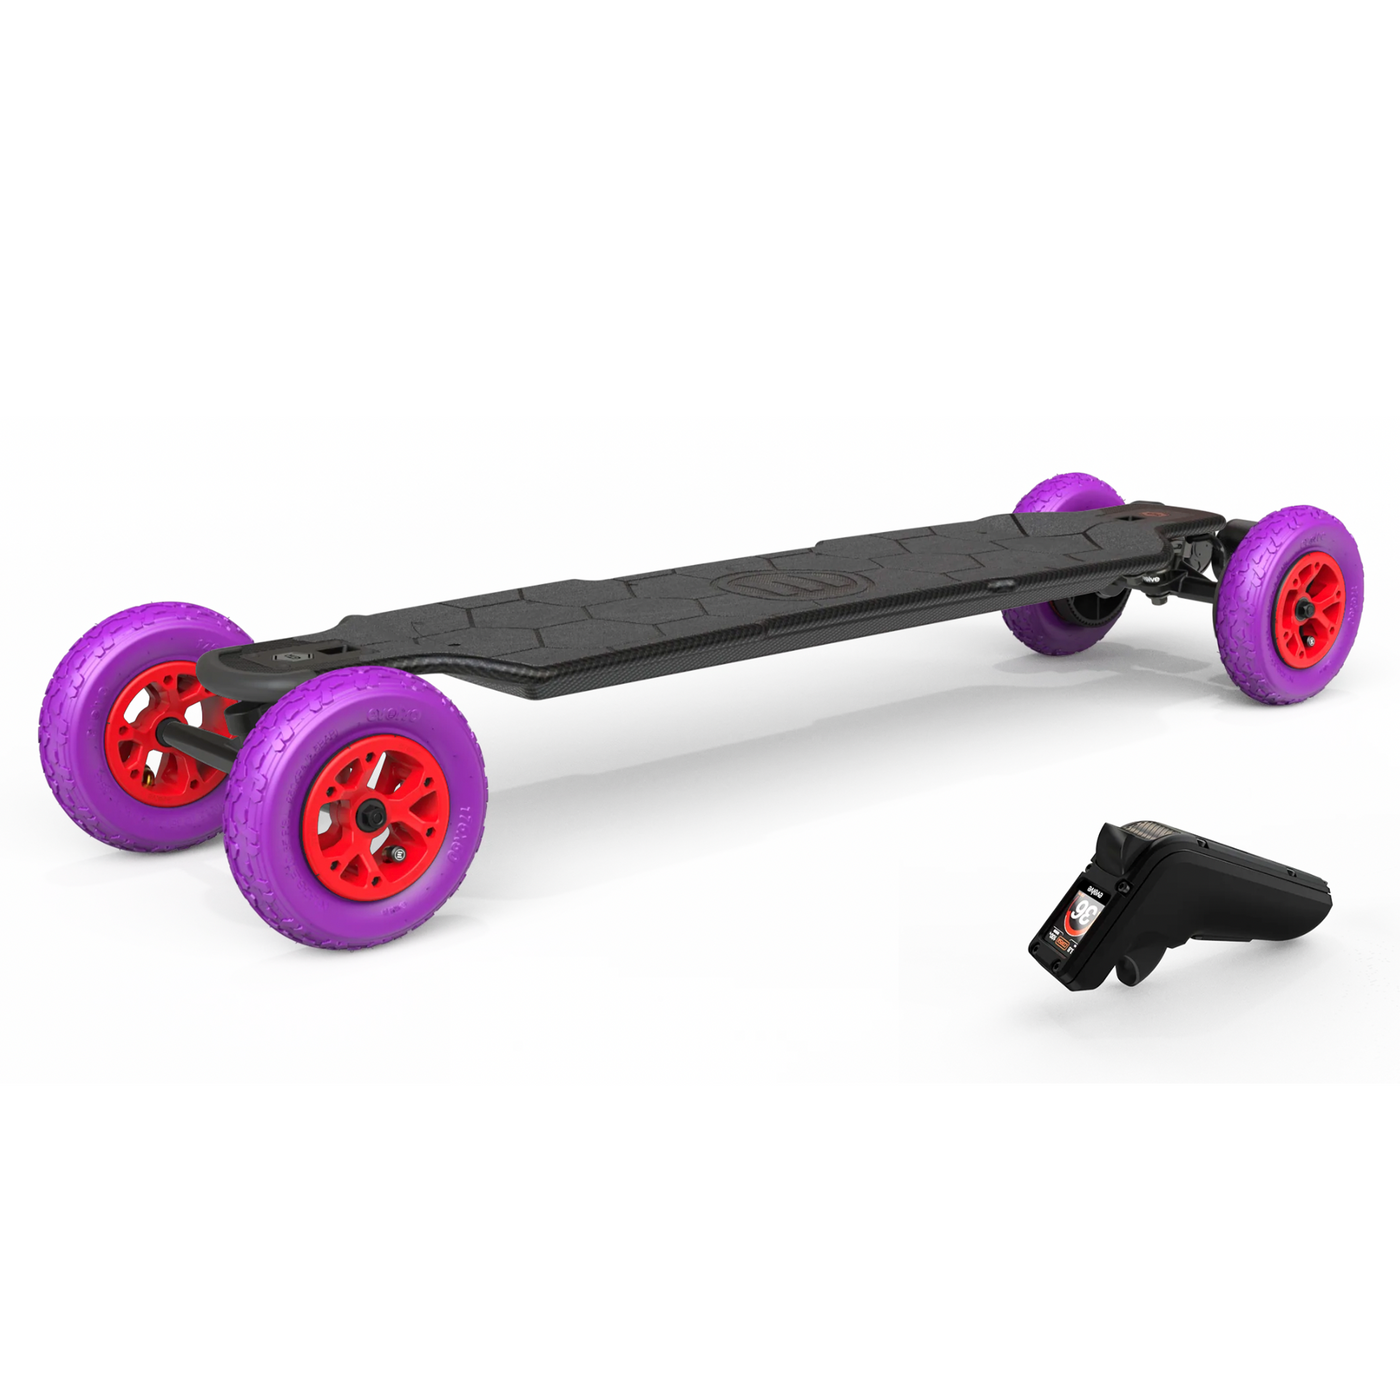 GTR Carbon Electric Skateboard All Terrain Series 2